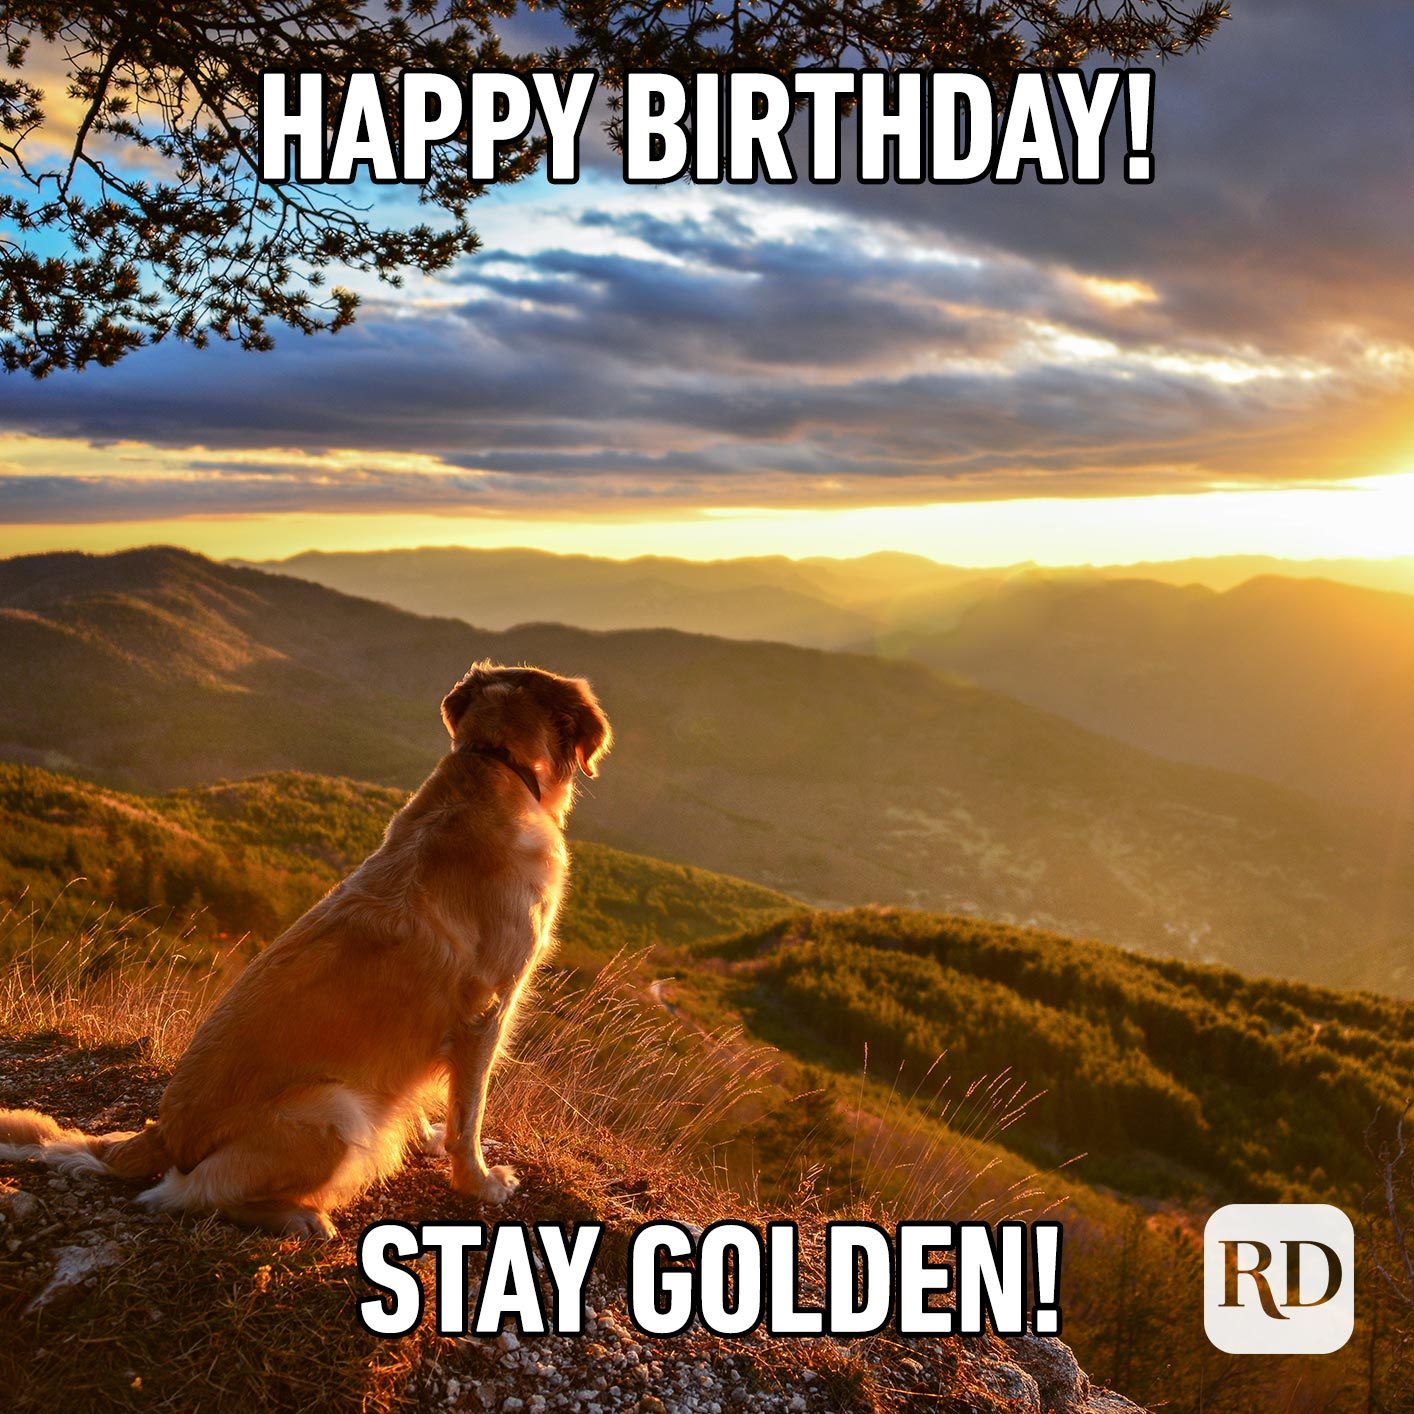 Happy Birthday! Stay golden!